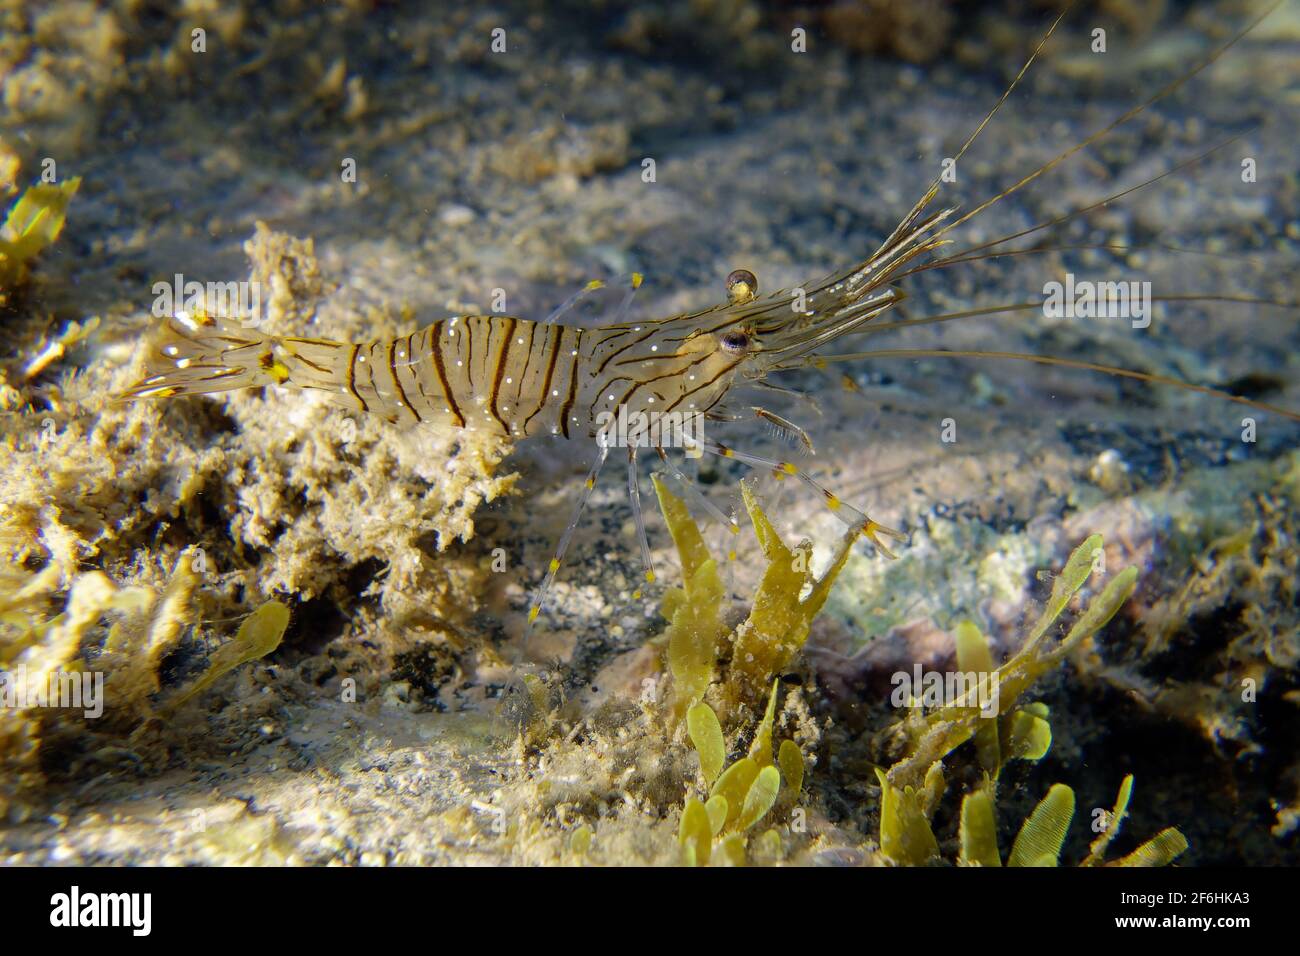 Common prawn or Glass prawn (Palaemon serratus) Stock Photo